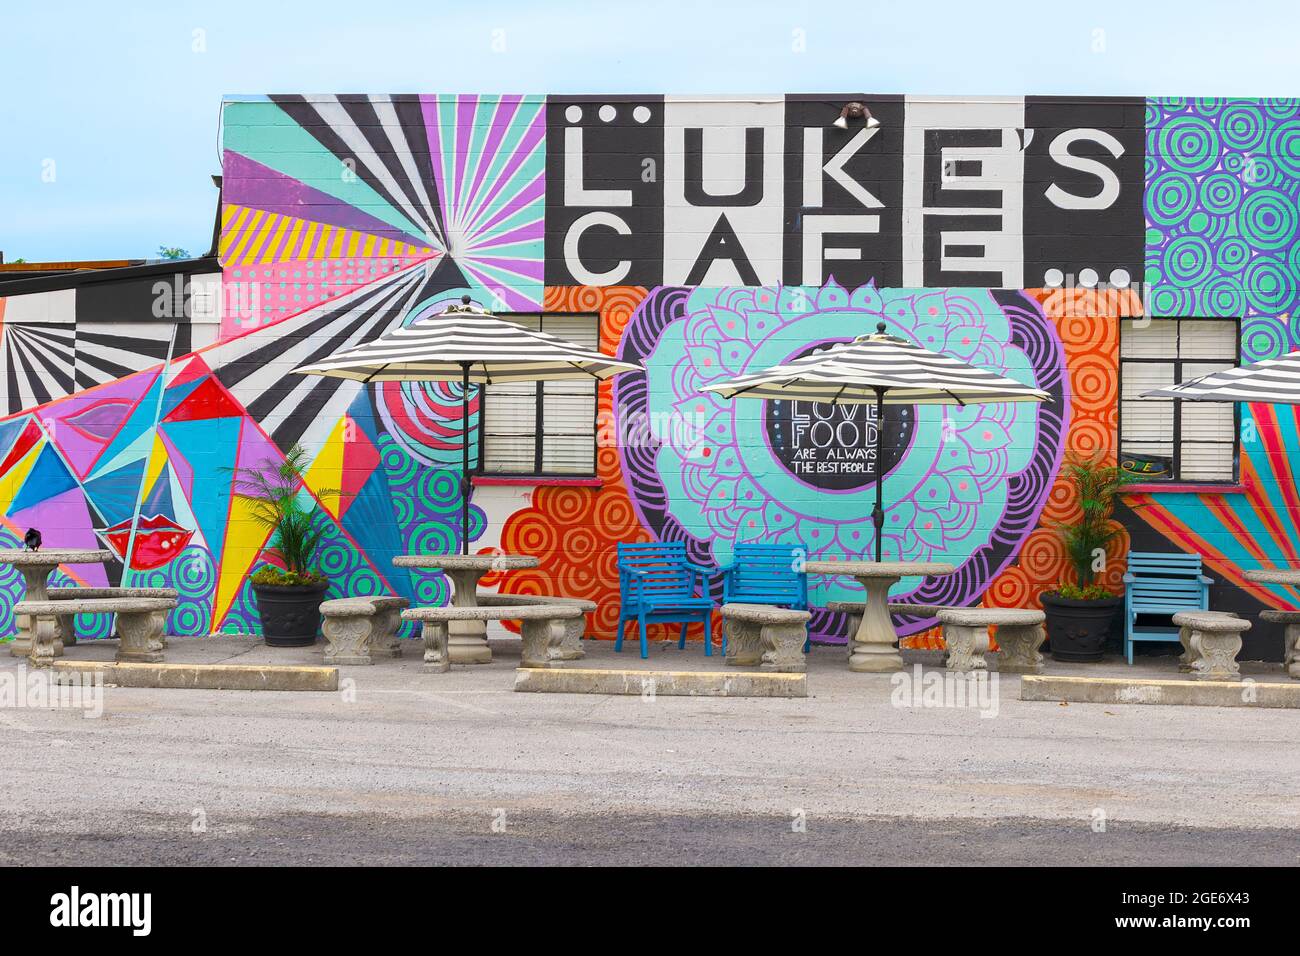 Abbington, Virginia, Stati Uniti d'America - 7 agosto 2021: Luke's Cafe, cattura l'occhio con la sua facciata artsy, colorata e zona di mangiare all'aperto. Foto Stock